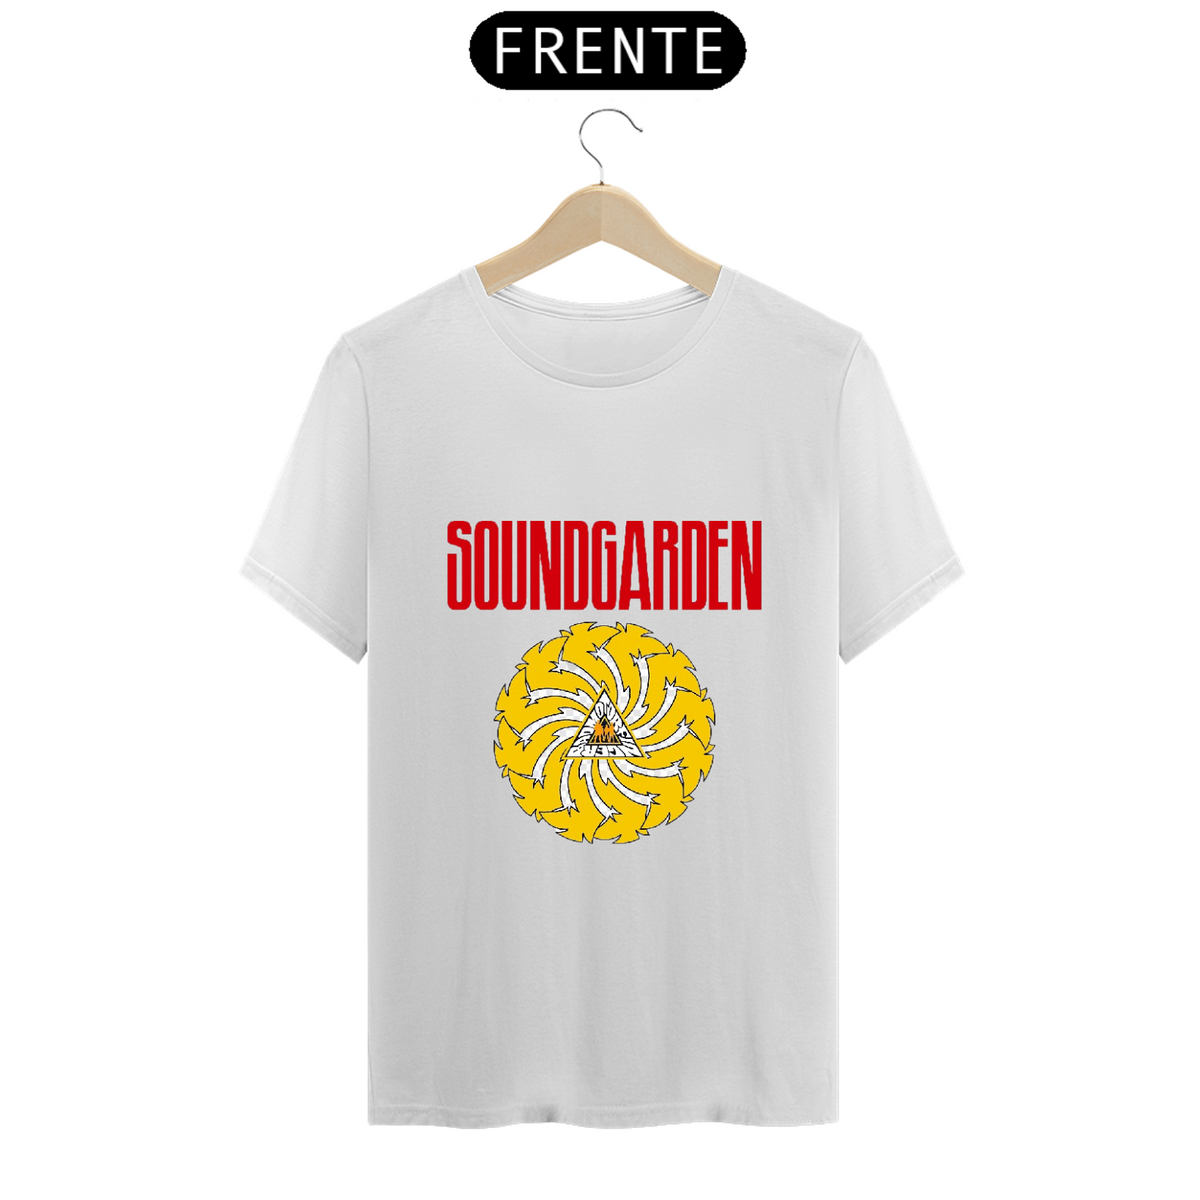 Nome do produto: Bandas Grunge - Soundgarden